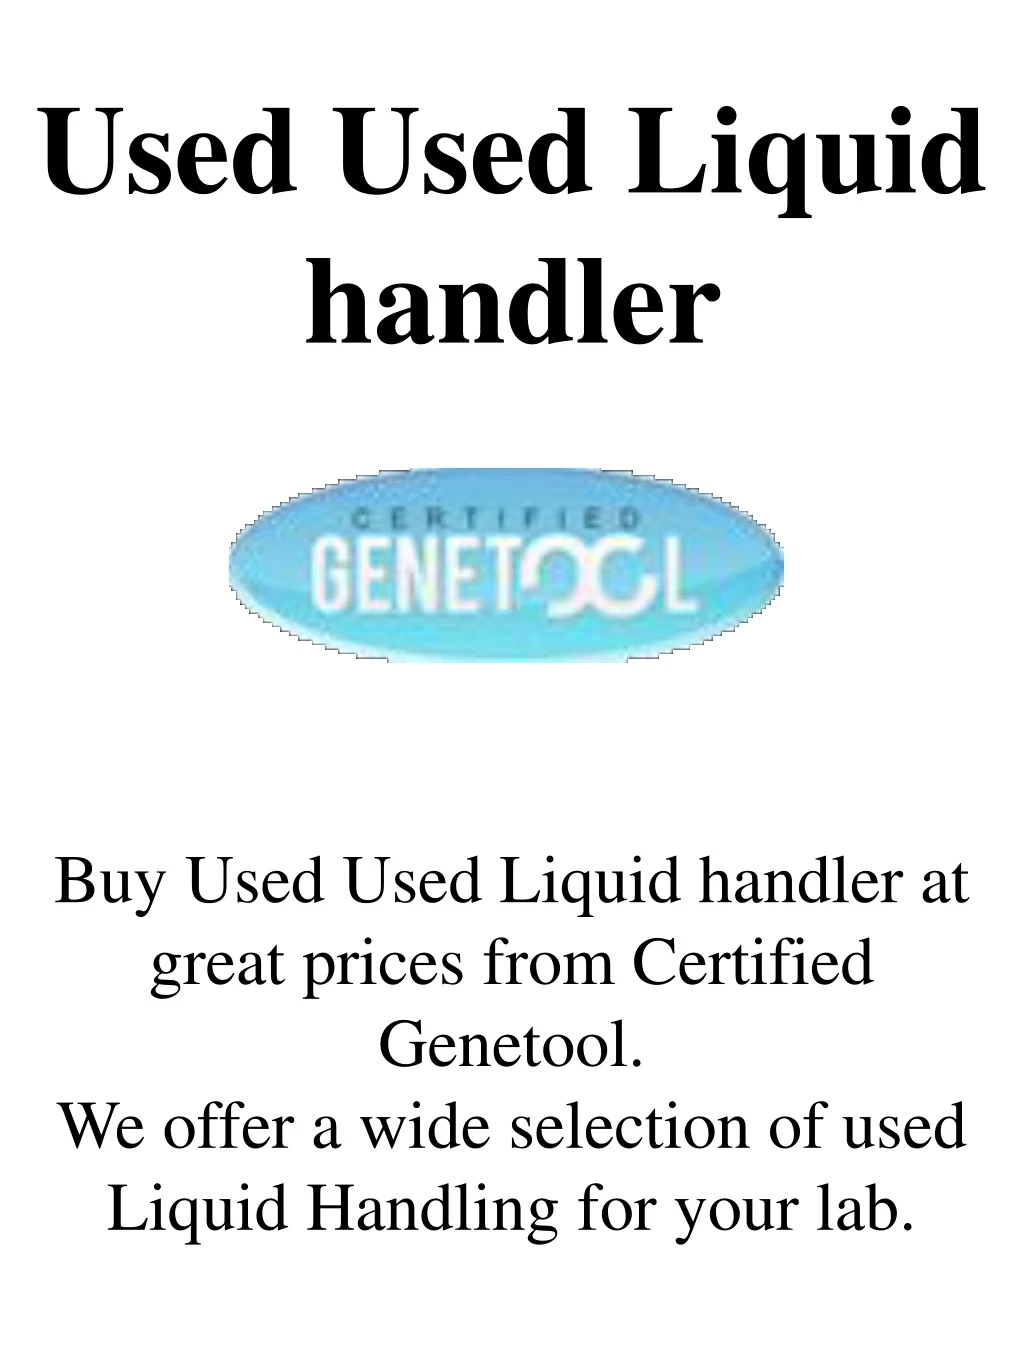 used used liquid handler